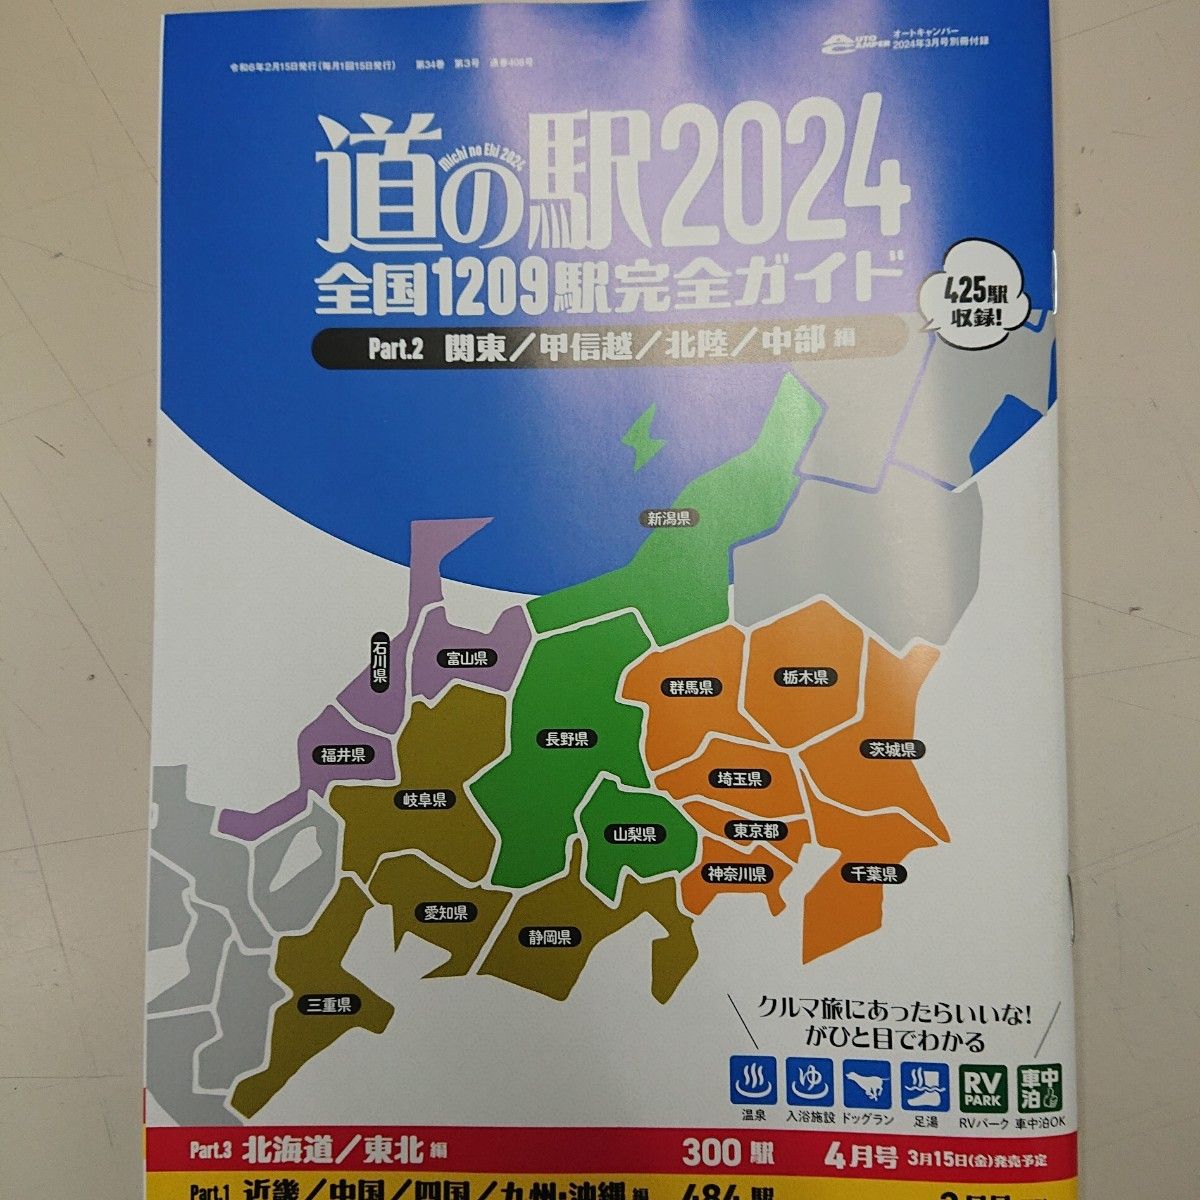 道の駅2024 全国1209駅完全ガイド  関東、甲信越、北陸、中部編 オートキャンパー付録